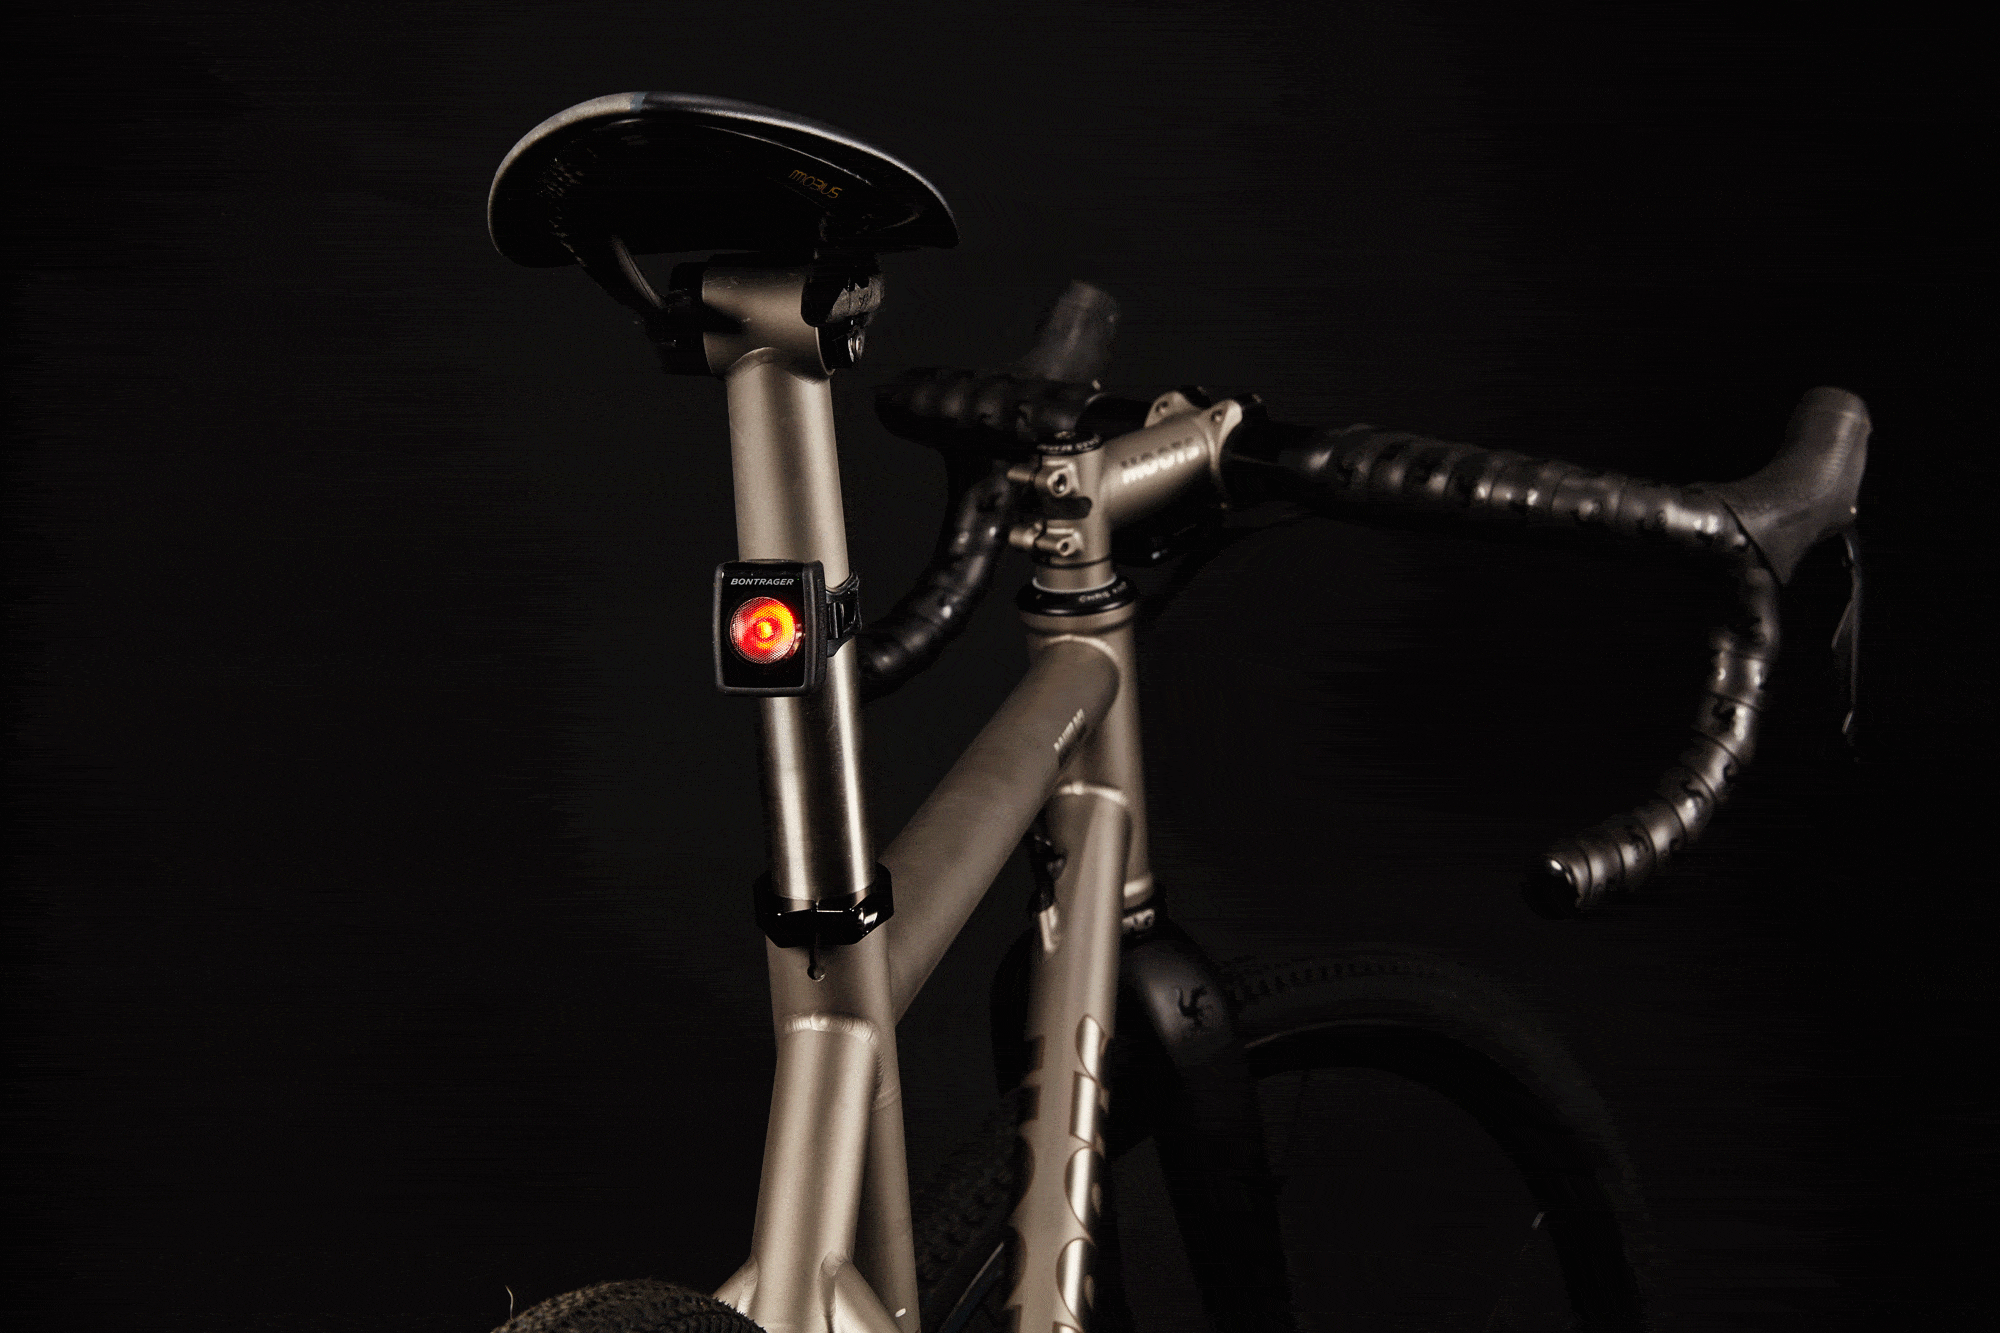 bontrager bicycle lights